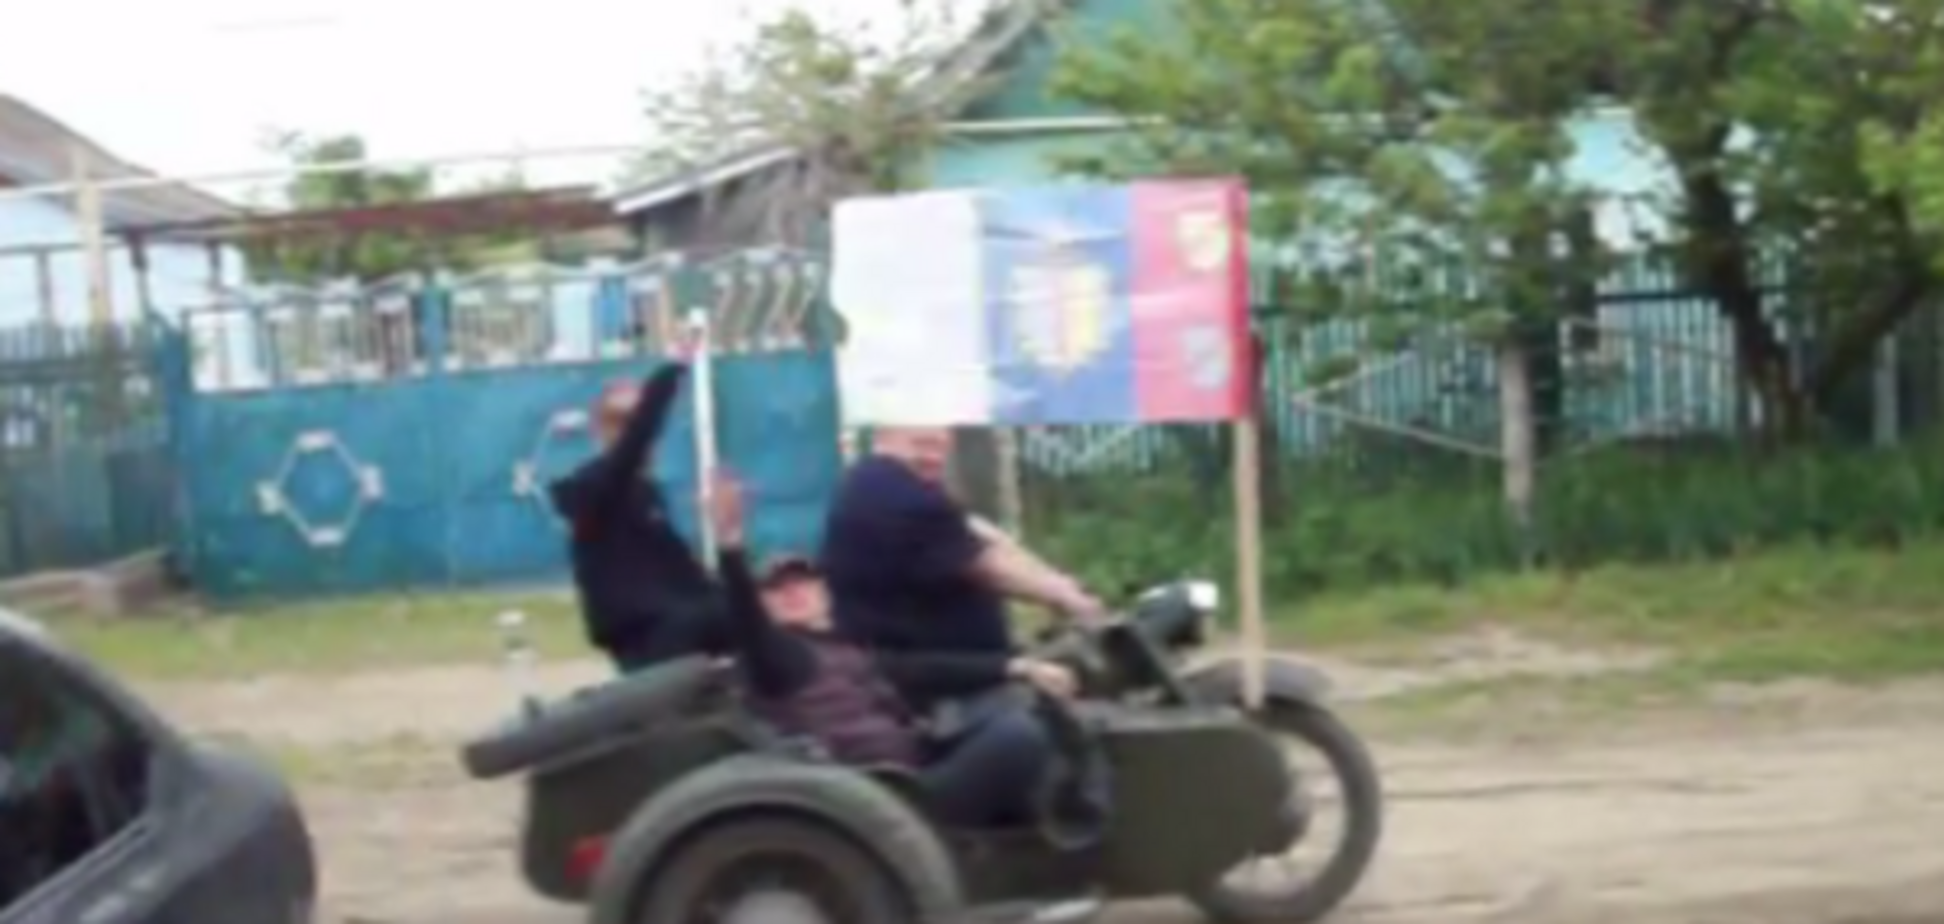 Шабаш с советскими флагами на Одесщине